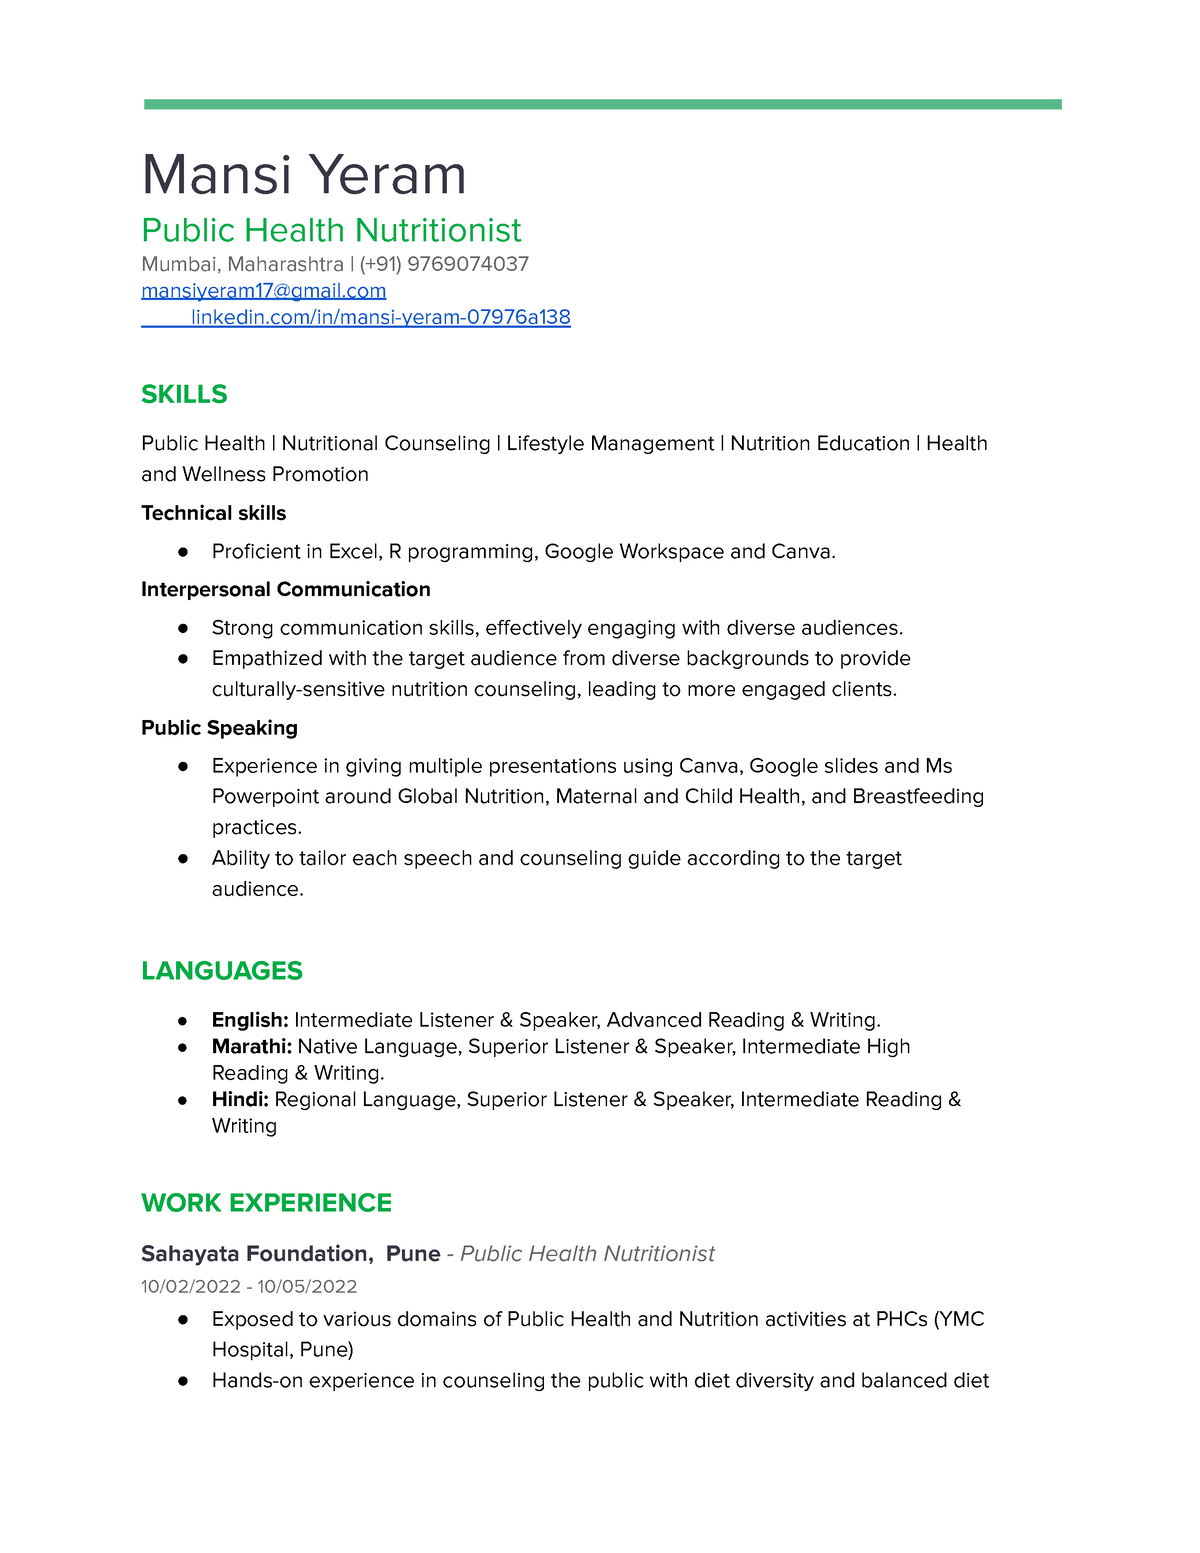 Resume-3 - Resume - Mansi Yeram Public Health Nutritionist Mumbai ...